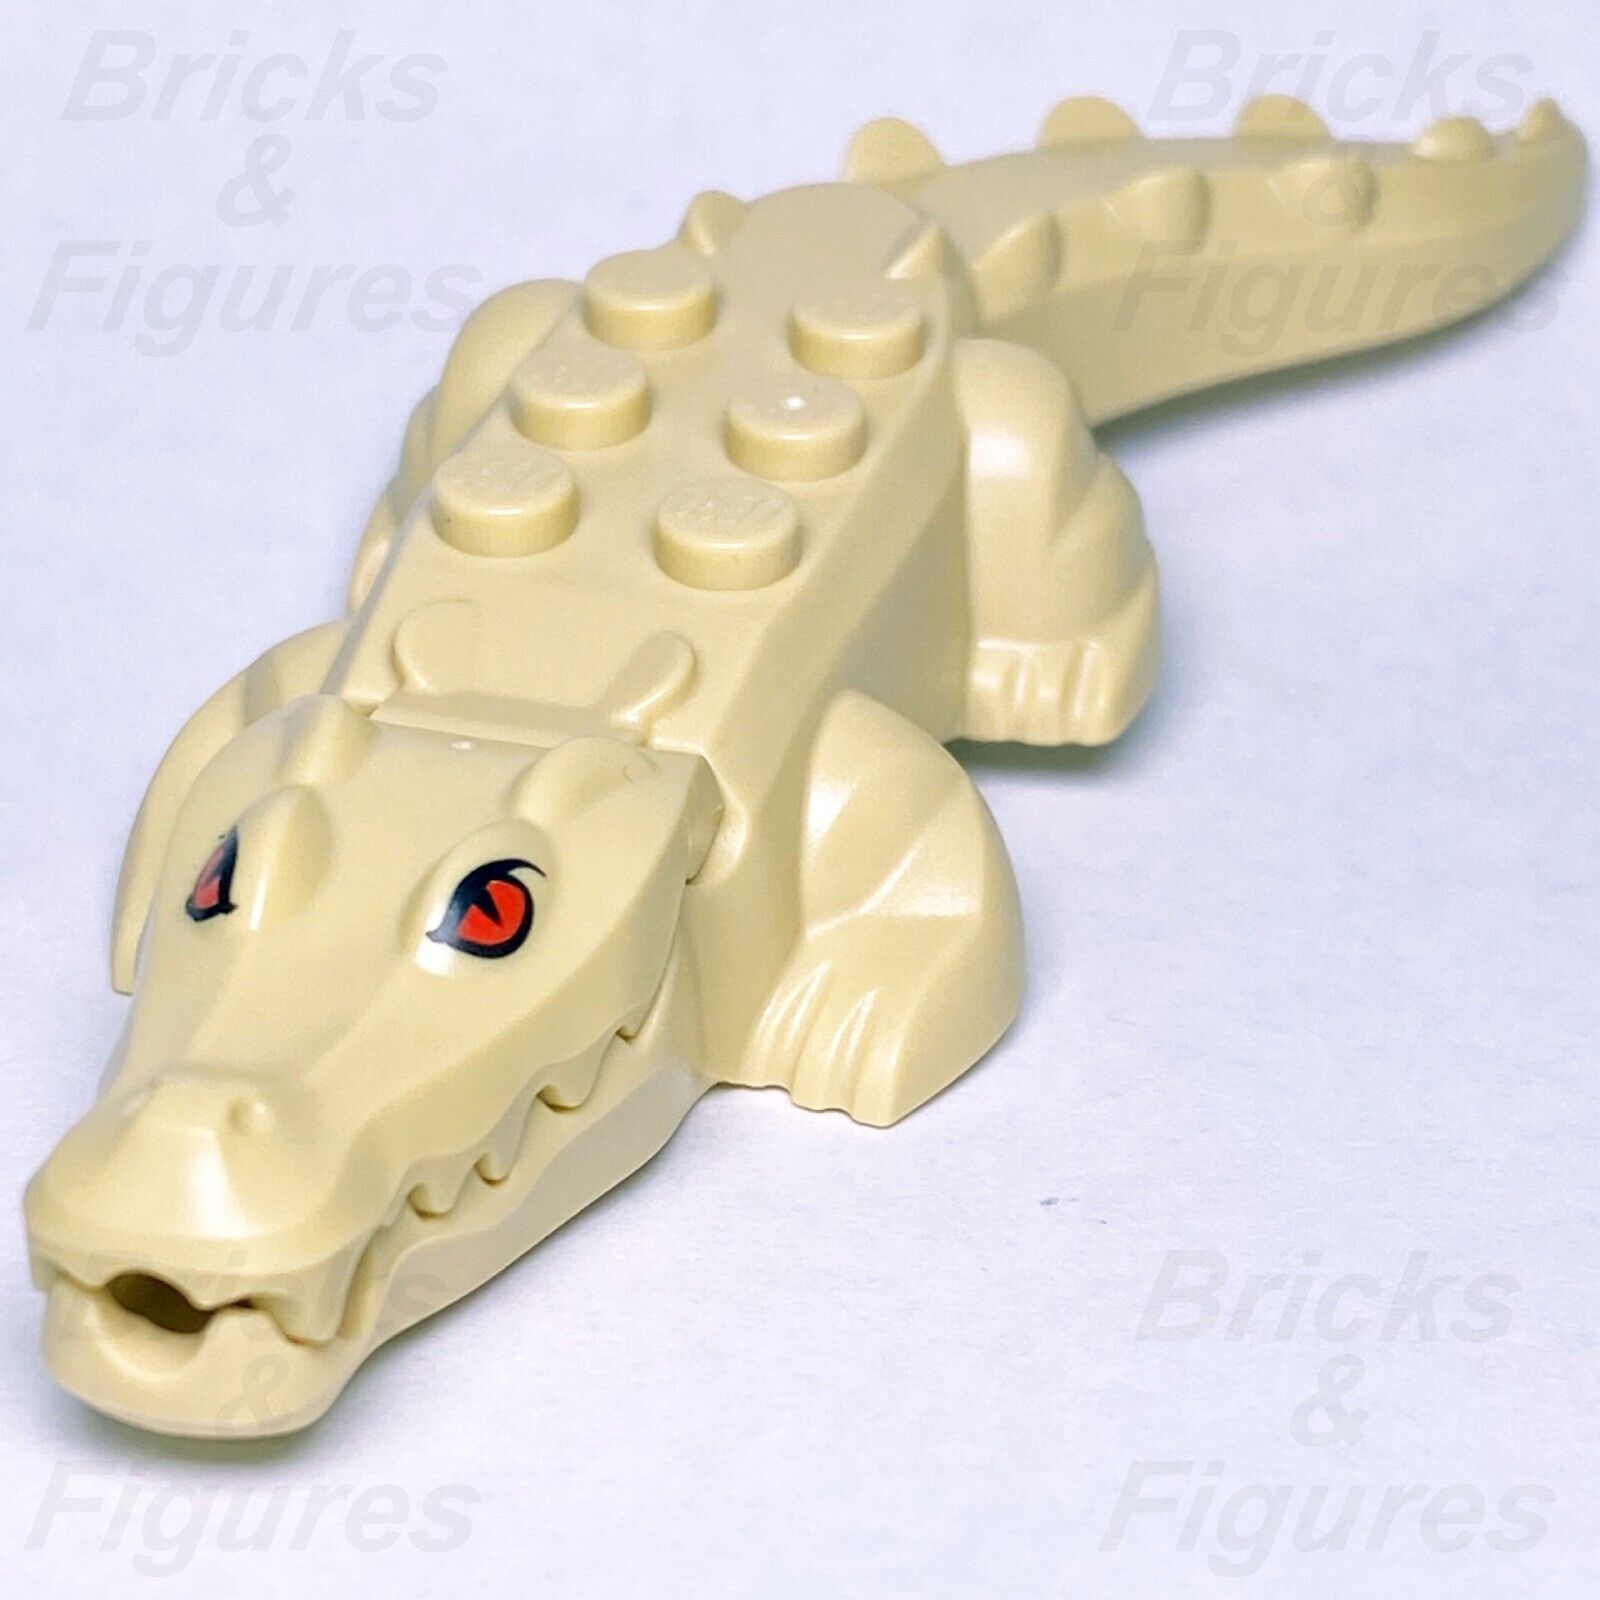 レゴ(LEGO) ヒドゥンサイド アリゲーター クロコダイル ミニフィギュア 動物部分 タン レッドアイズ 70419